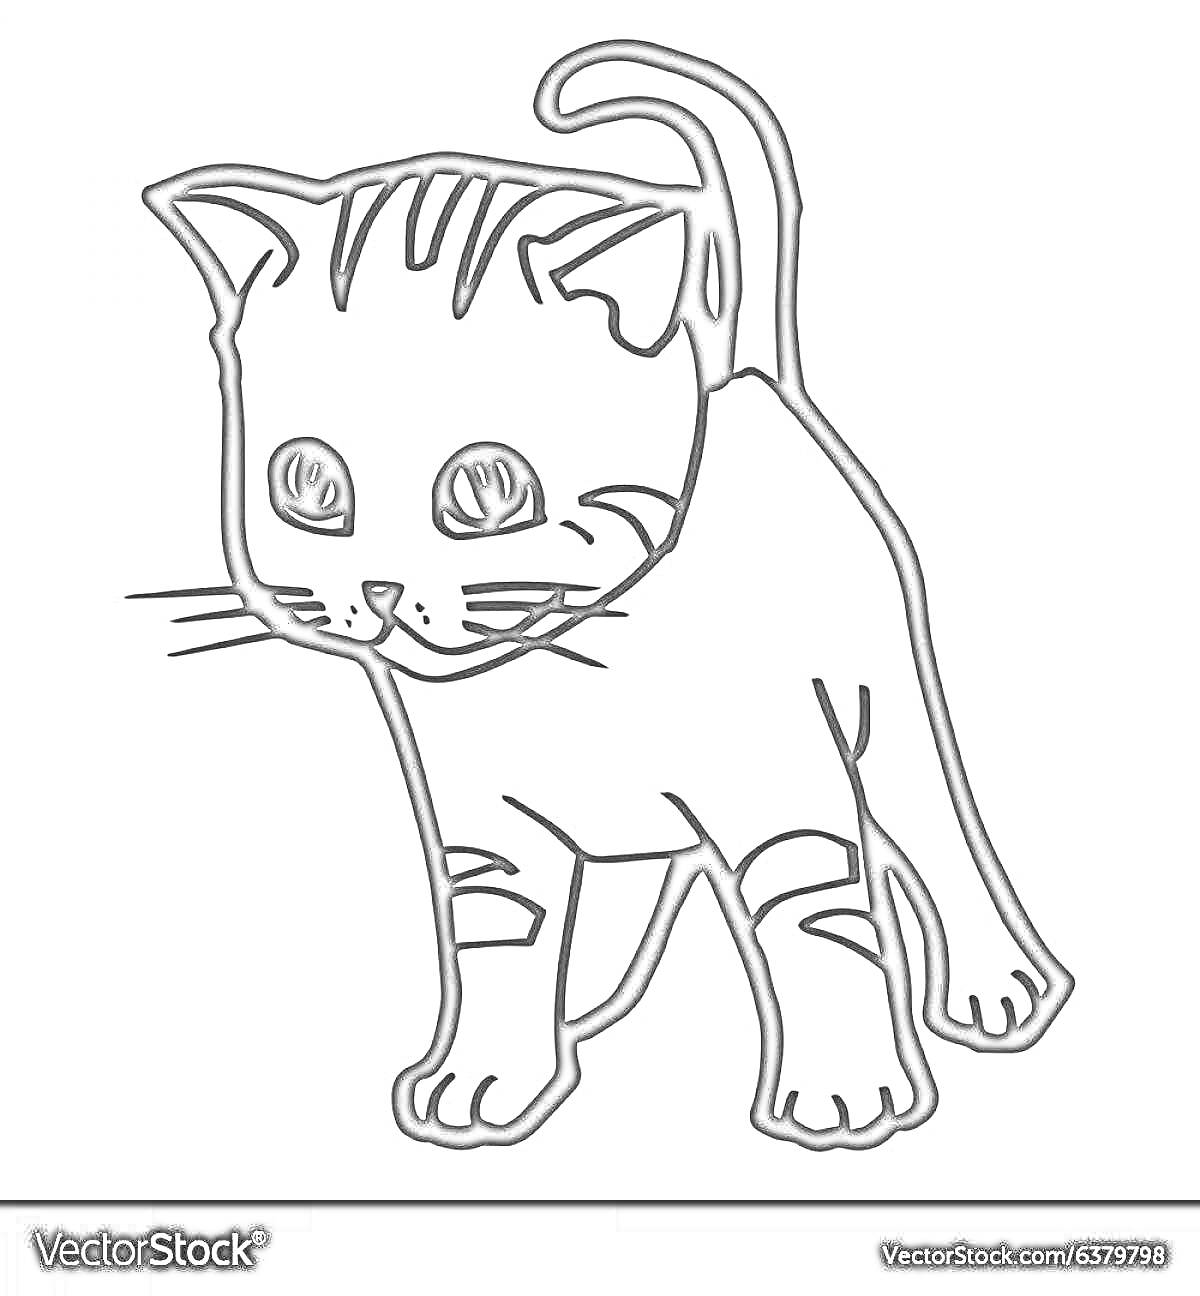 Мультяшный котенок с полосками и поднятым хвостом